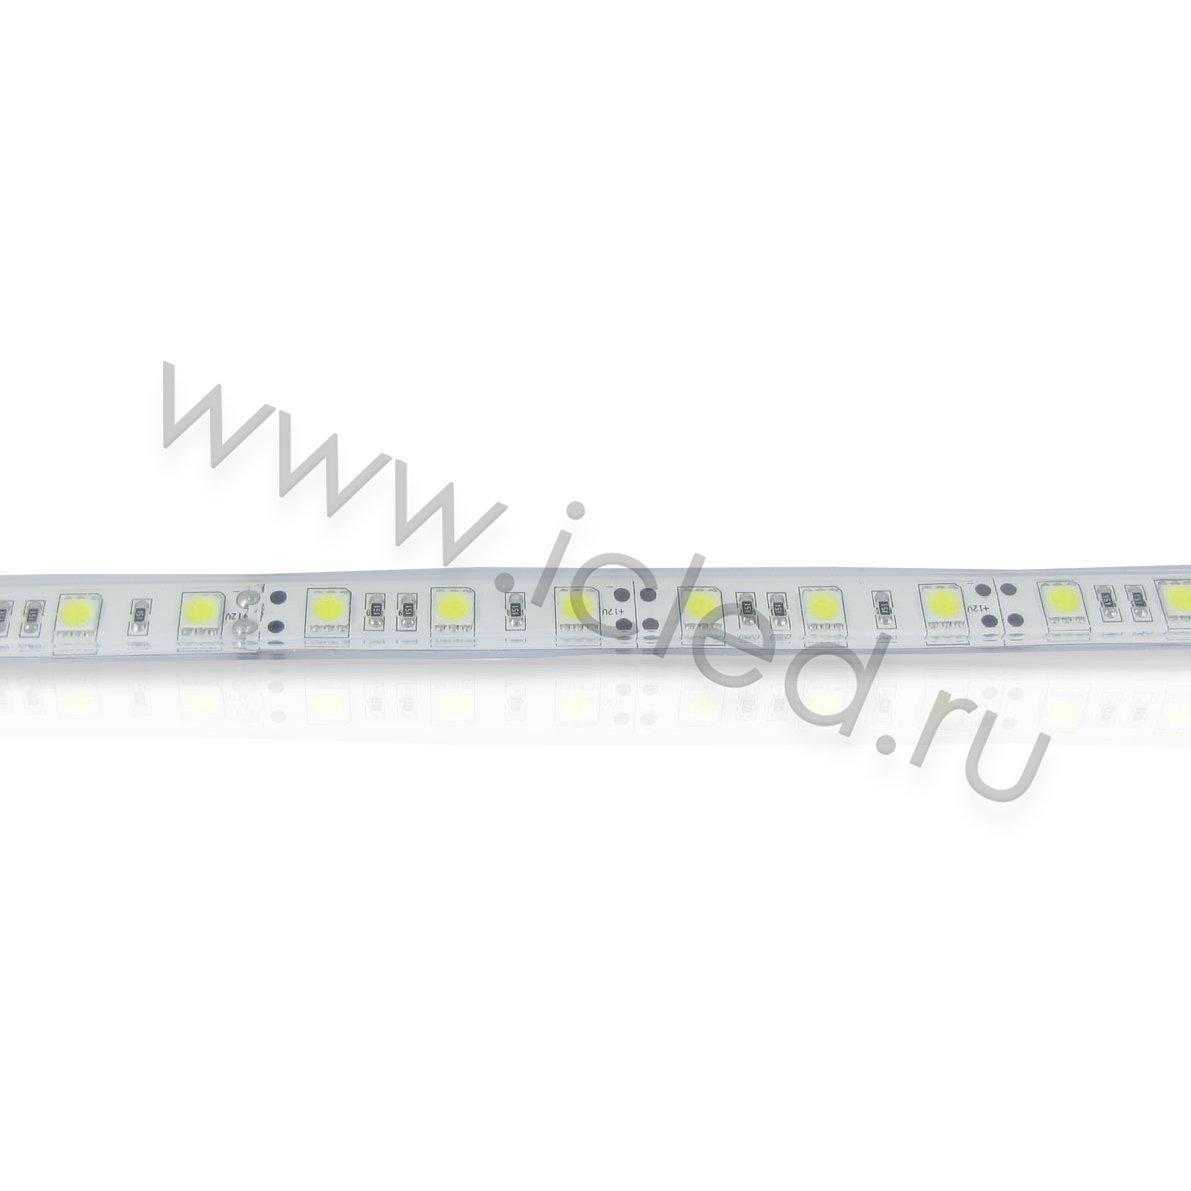 Влагозащищенные светодиодные ленты Светодиодная лента LUX class, 5050, 60 led/m, Cool White,24V,P622, IP68 Icled